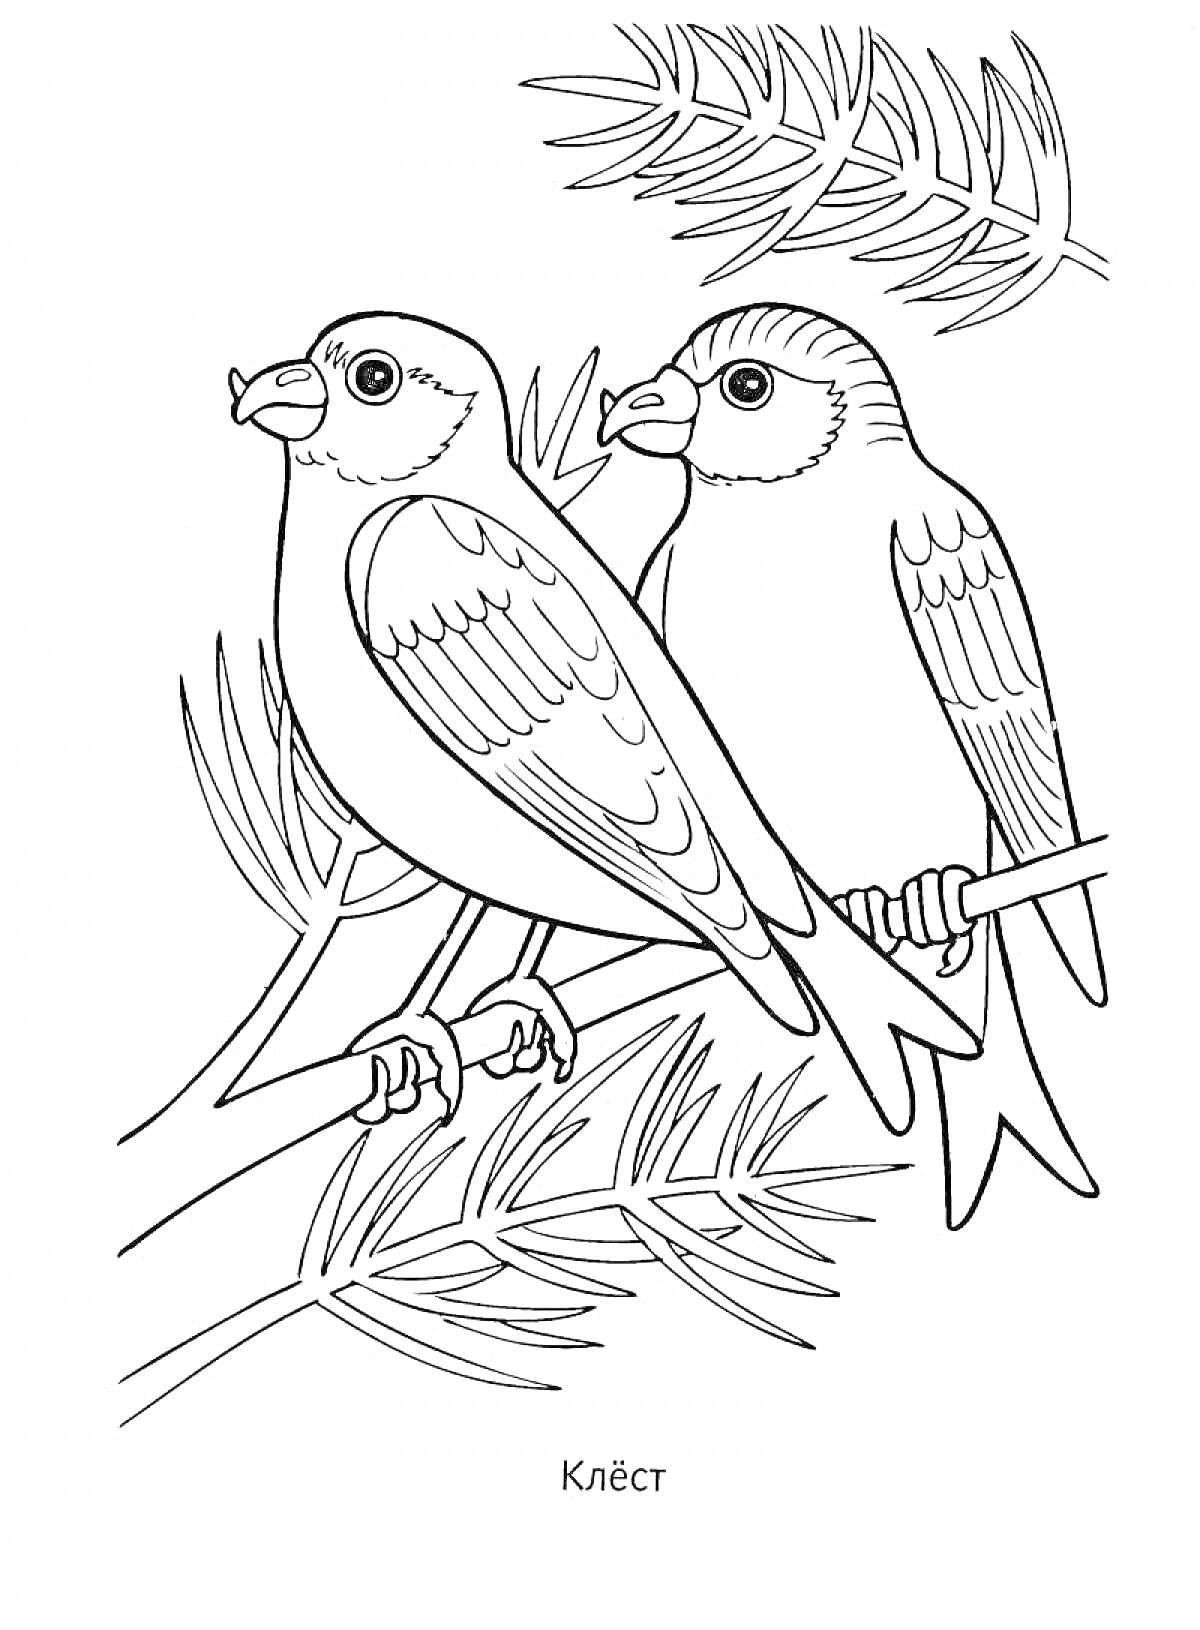 Раскраска Две птицы клеста на ветках хвойного дерева